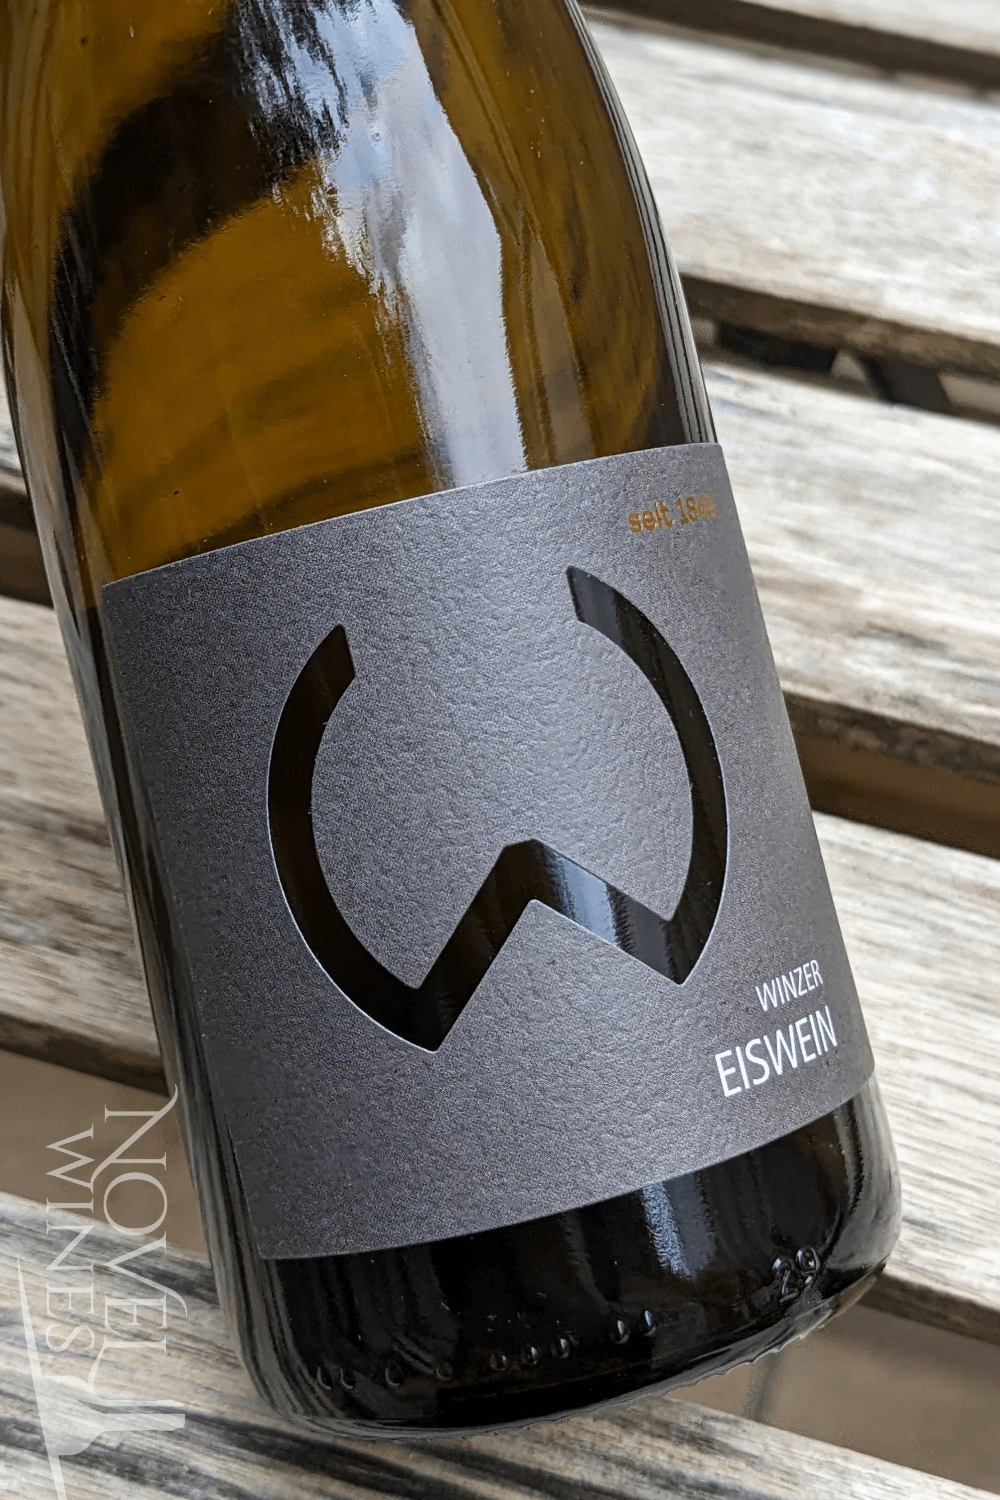 Weinhof Waldschutz Dessert Wine Waldschutz Gruner Veltliner Eiswein 2019, Austria